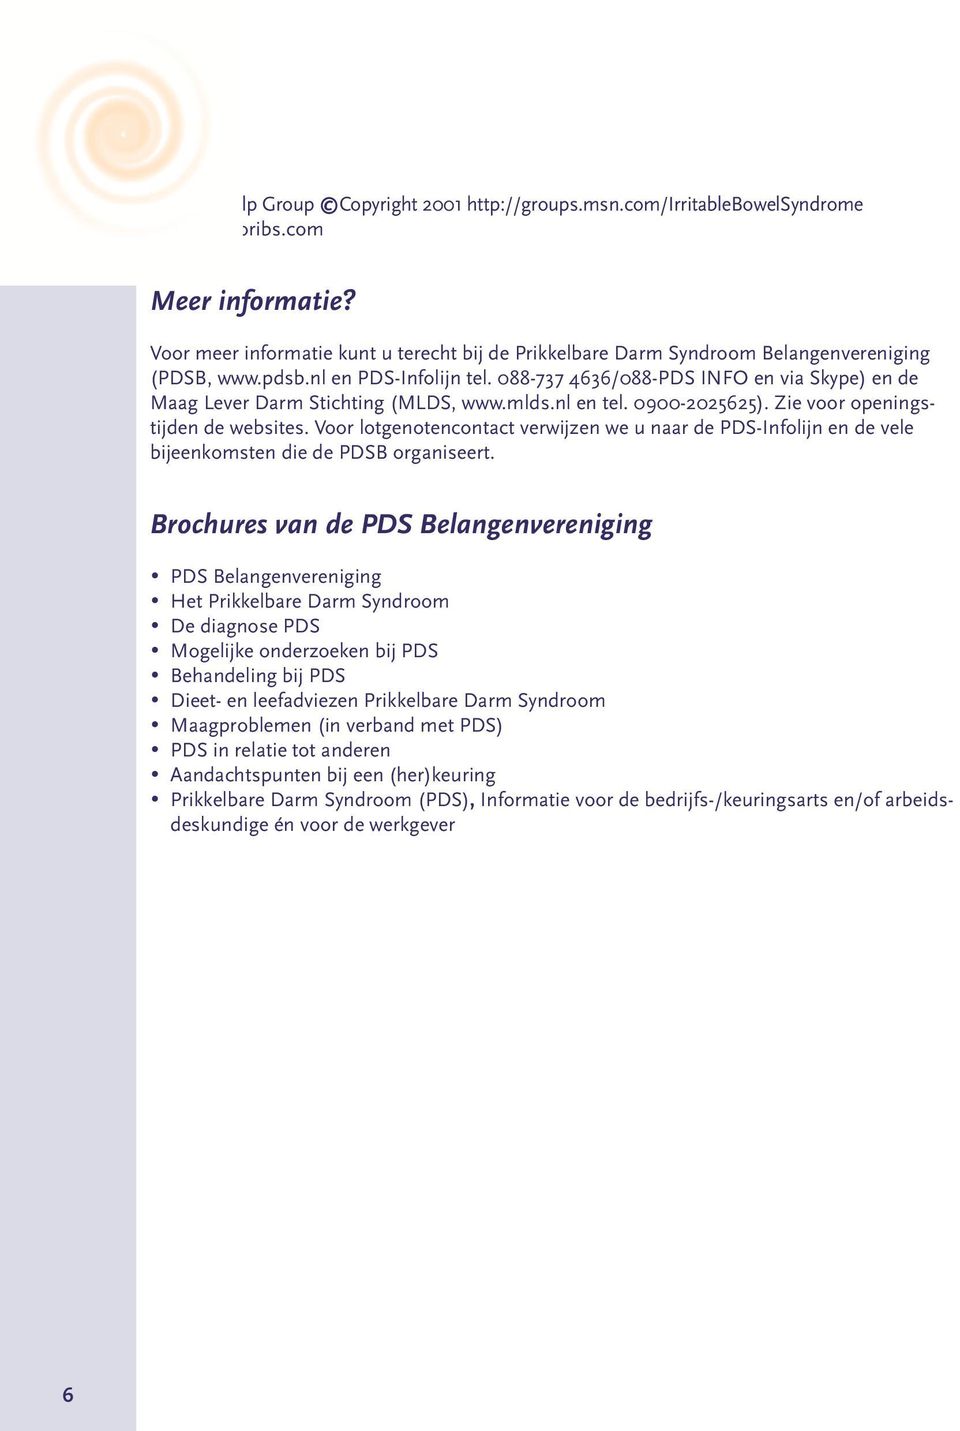 088-737 4636/088-PDS INFO en via Skype) en de Maag Lever Darm Stichting (MLDS, www.mlds.nl en tel. 0900-2025625). Zie voor openingstijden de websites.